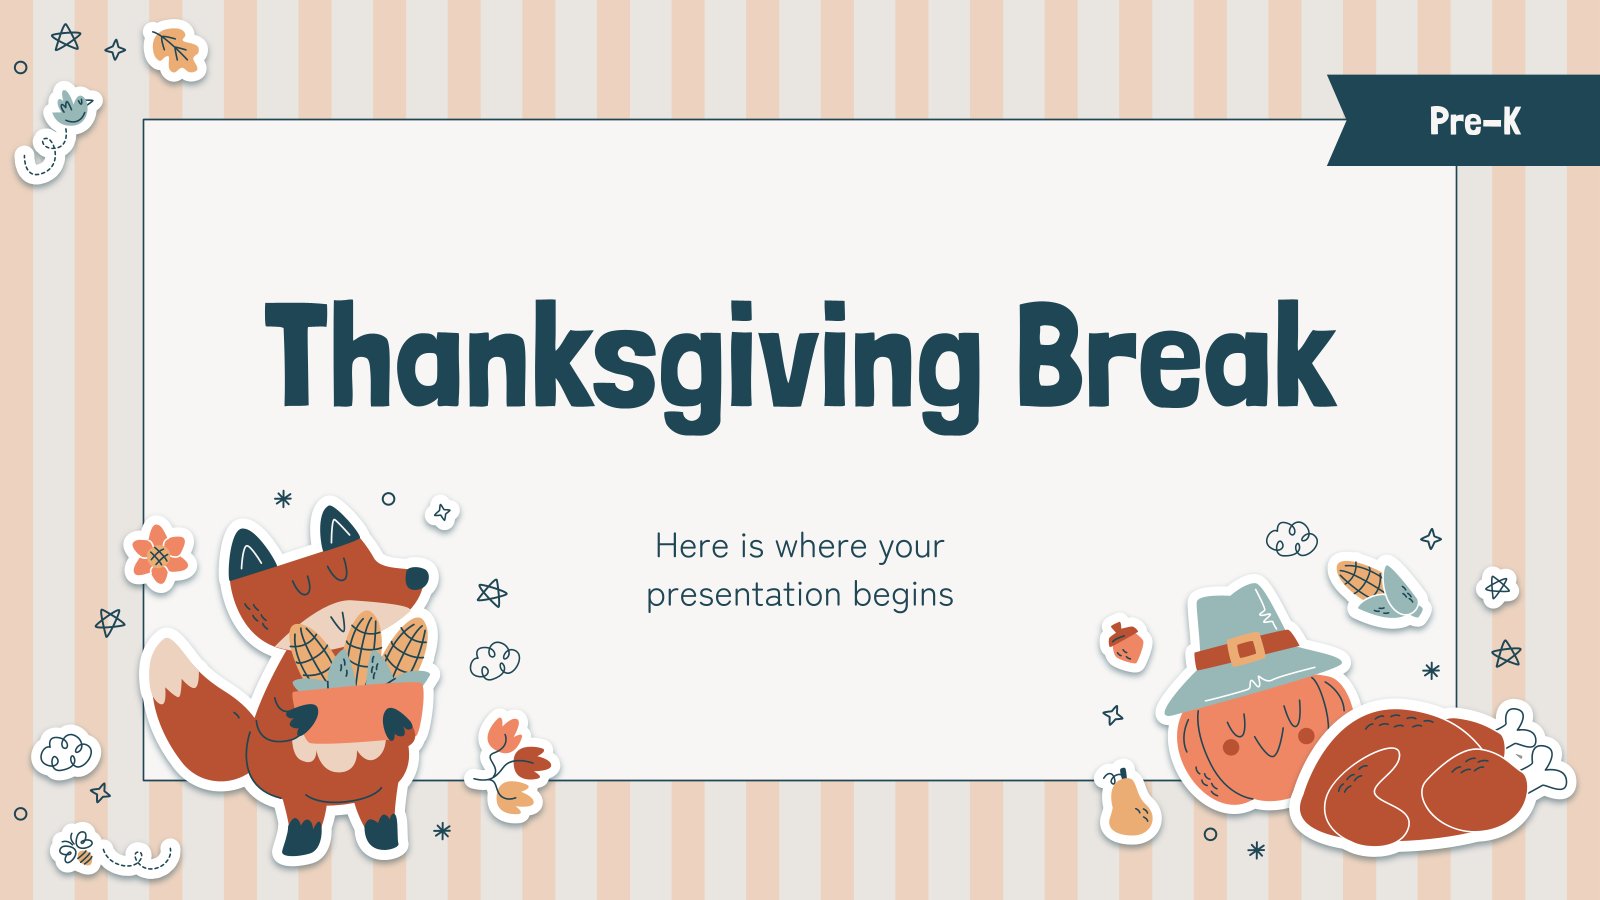 Thanksgiving Break for Pre-K presentation template 